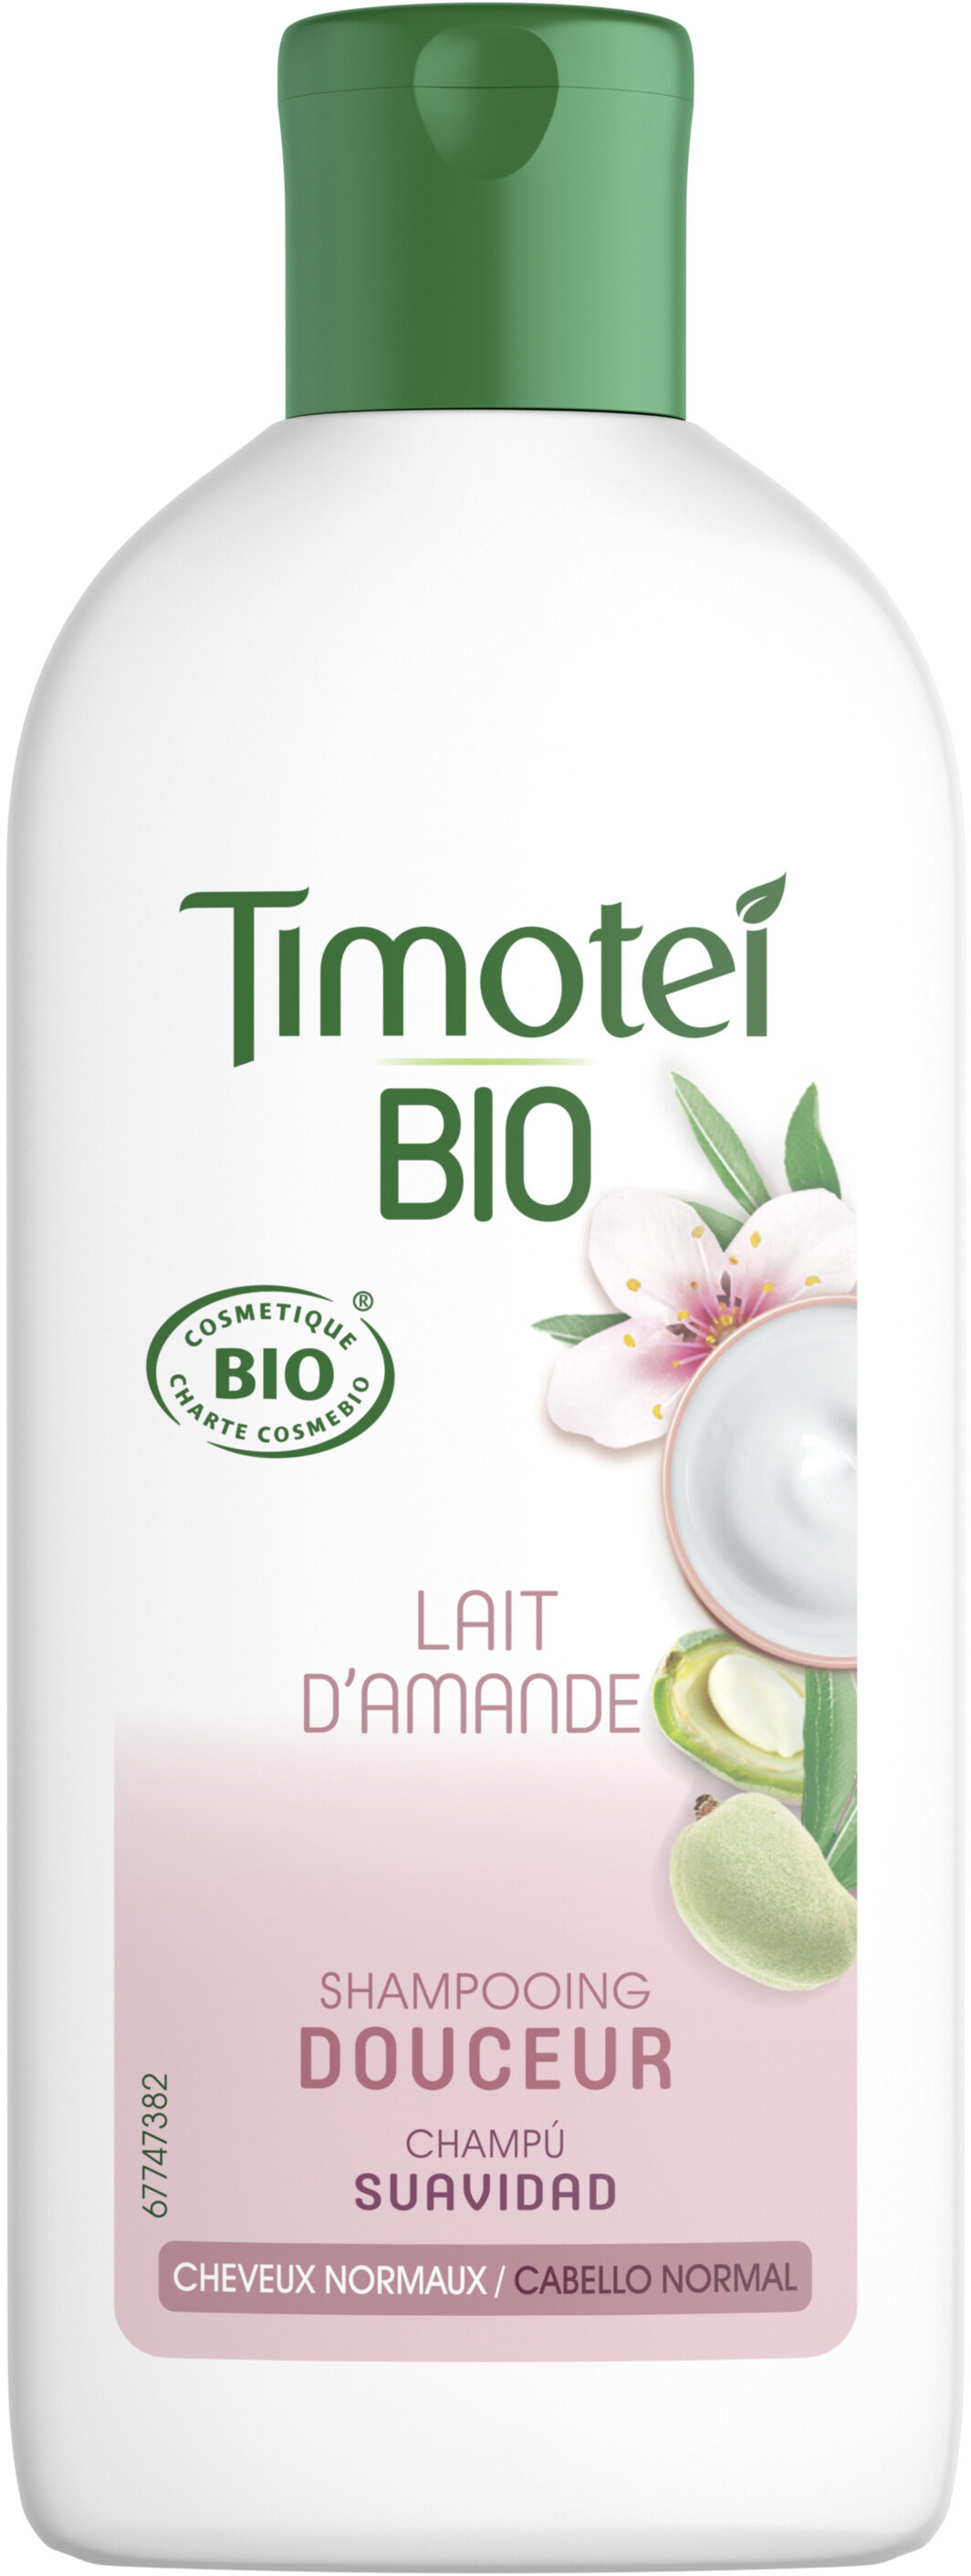 Timotei Bio Shampooing Femme infusé au Lait d'Amande Douce Cosmebio 250ml - Produit - fr